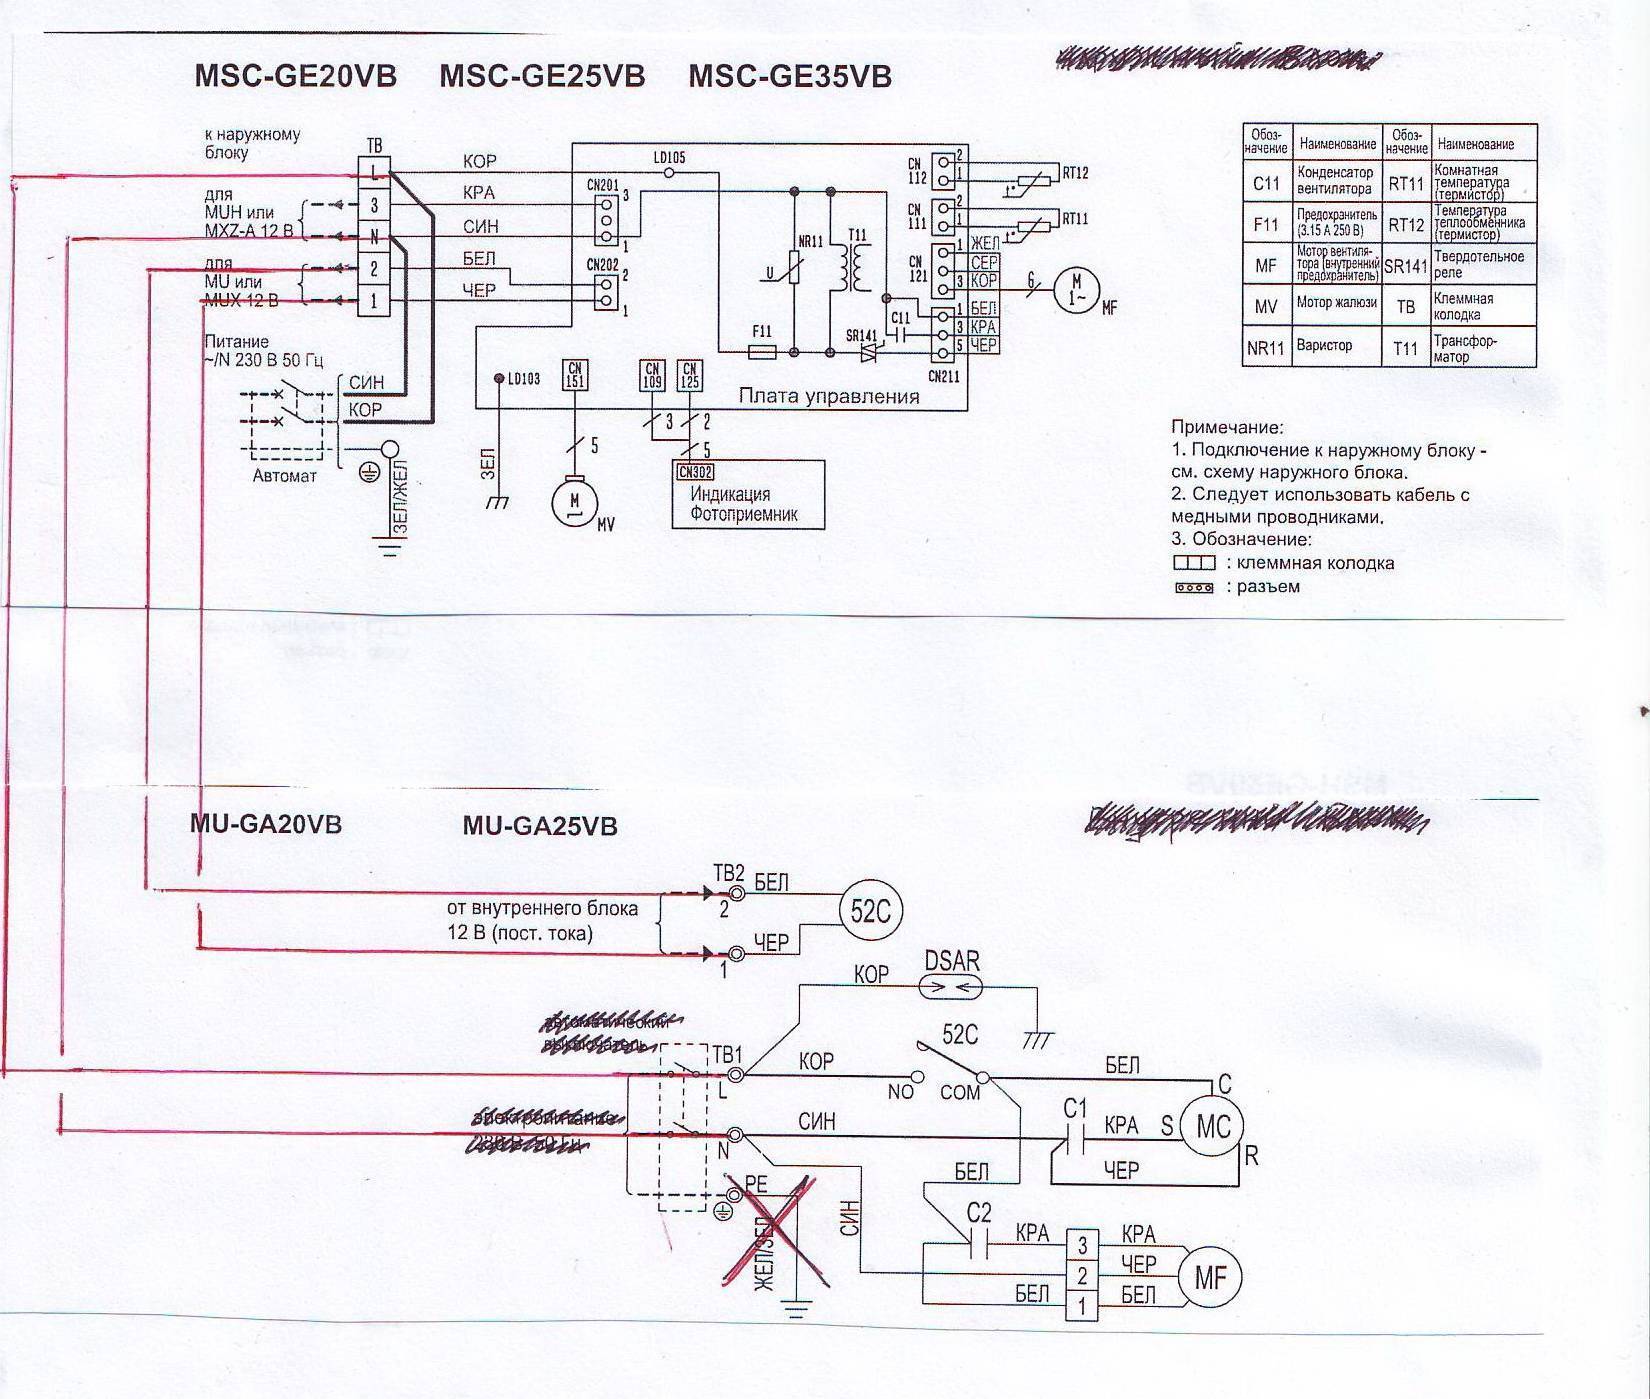 Способы подключения кондиционера или сплит-системы в электросеть